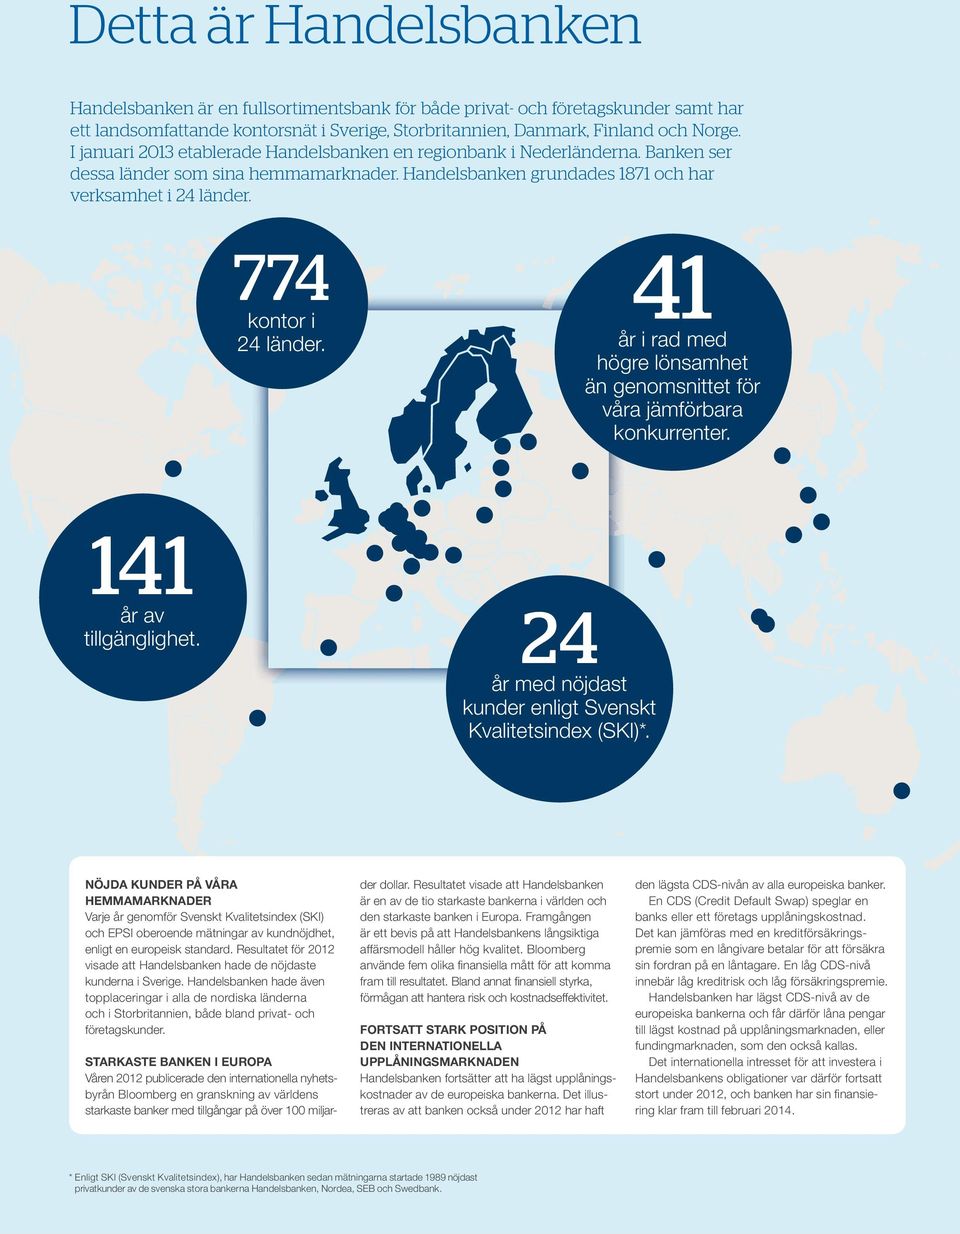 774 kontor i 24 länder. 41 år i rad med högre lönsamhet än genomsnittet för våra jämförbara konkurrenter. 141 år av tillgänglighet. 24 år med nöjdast kunder enligt Svenskt Kvalitetsindex (SKI)*.